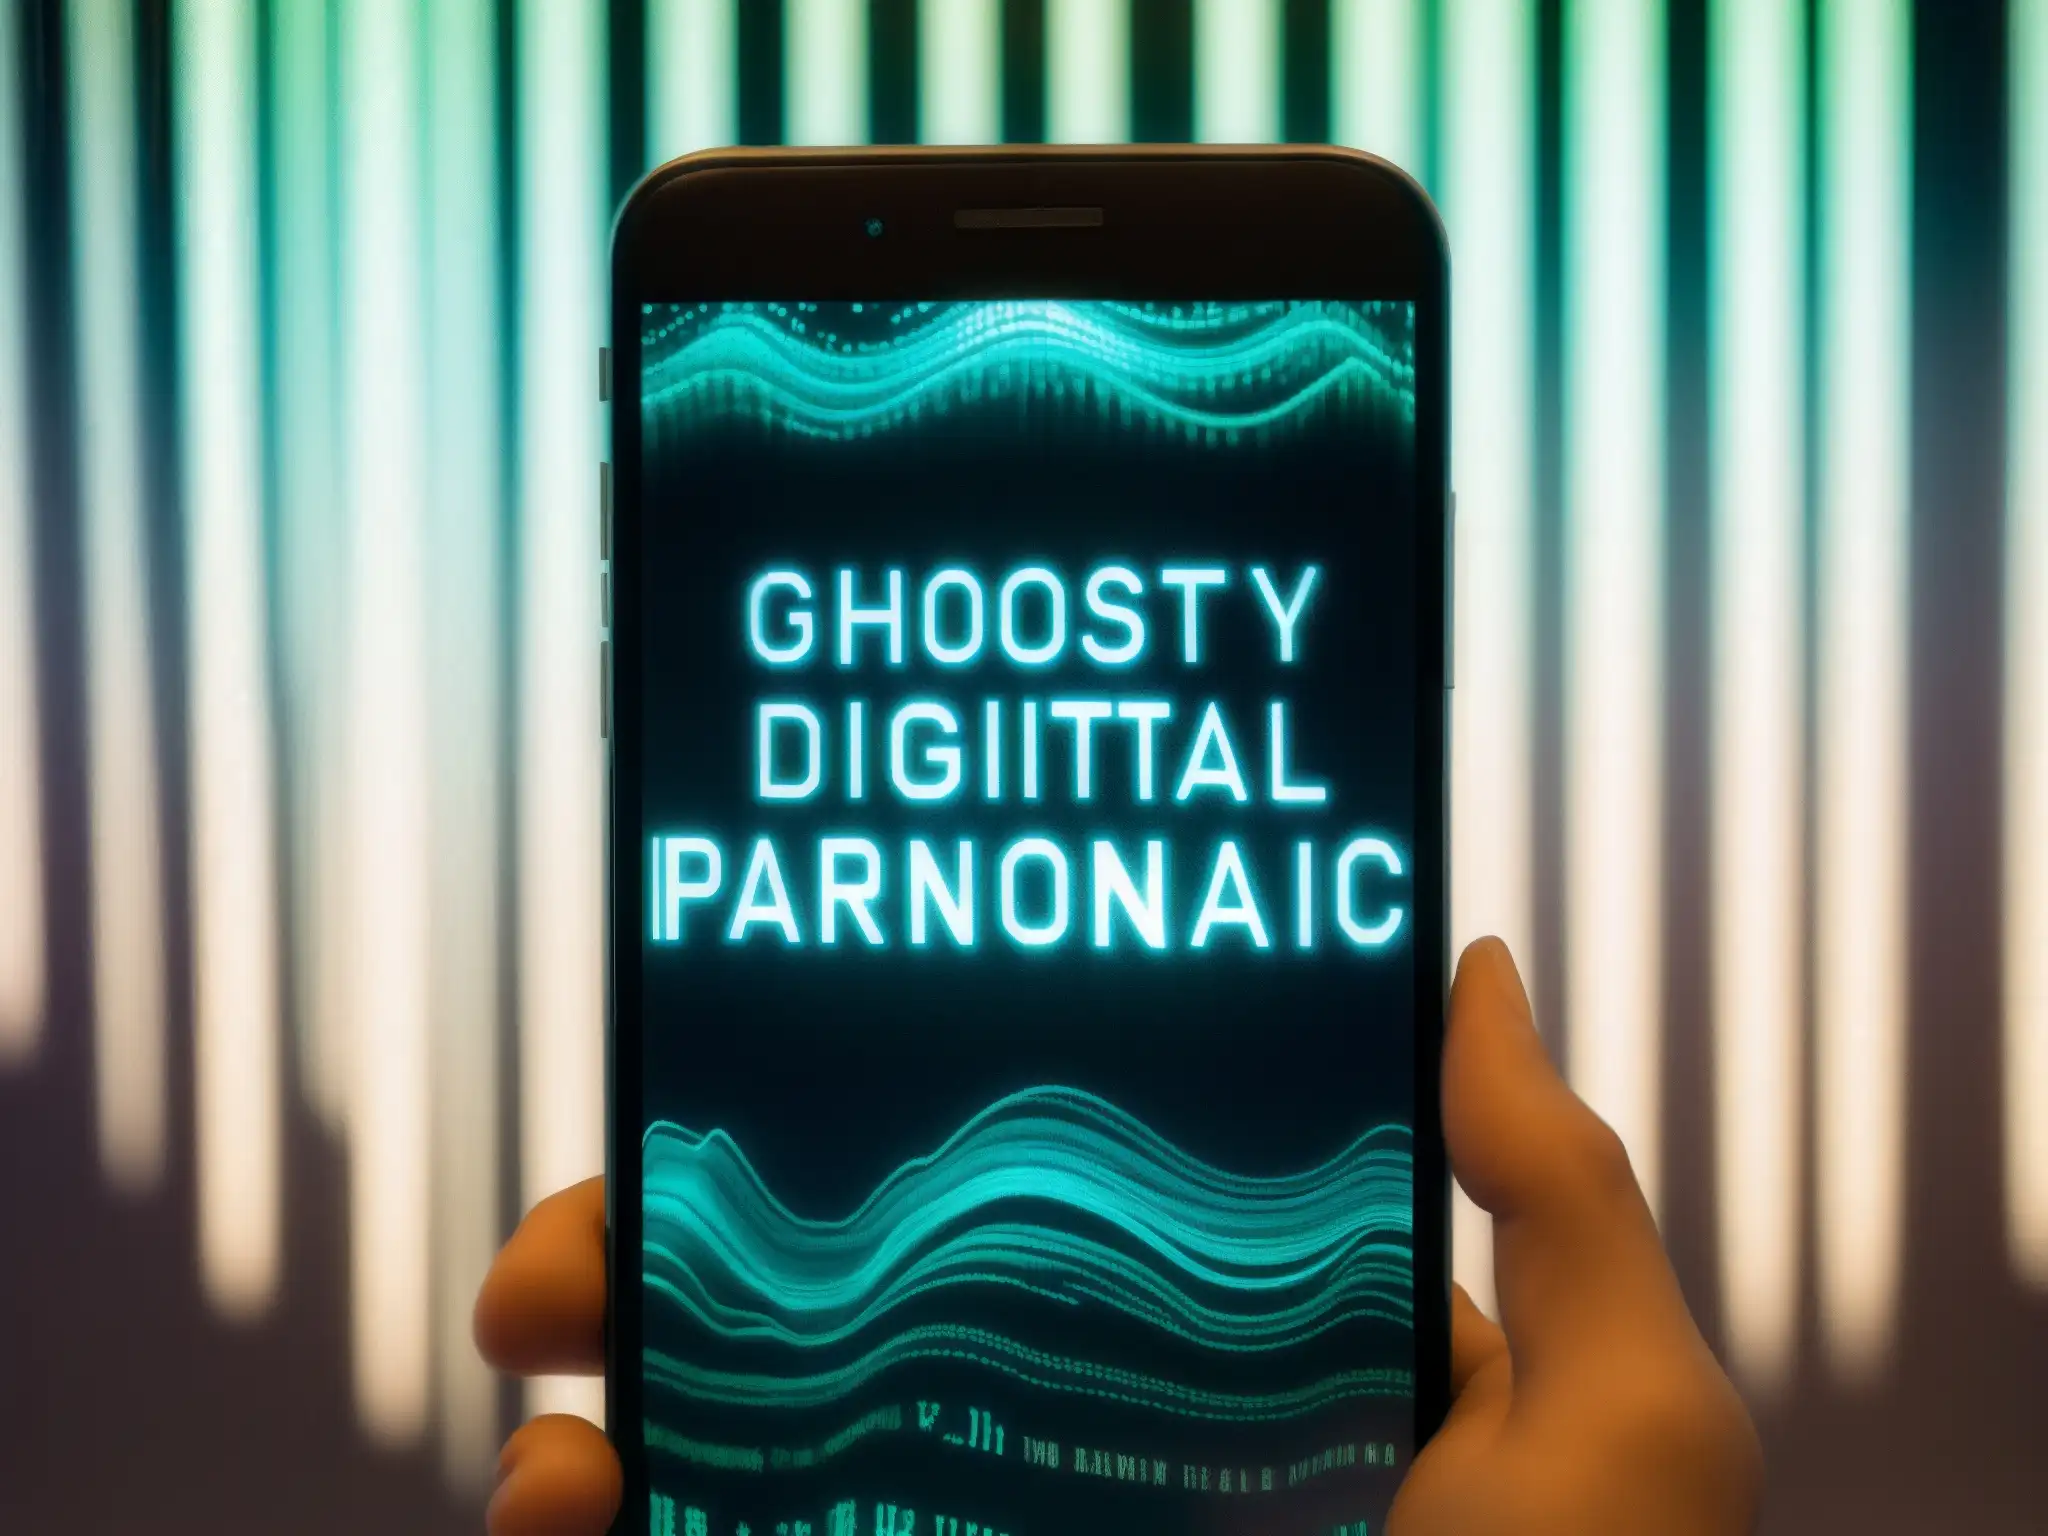 Imagen inquietante de un smartphone con texto e imágenes distorsionadas, evocando fenómenos paranormales en dispositivos electrónicos